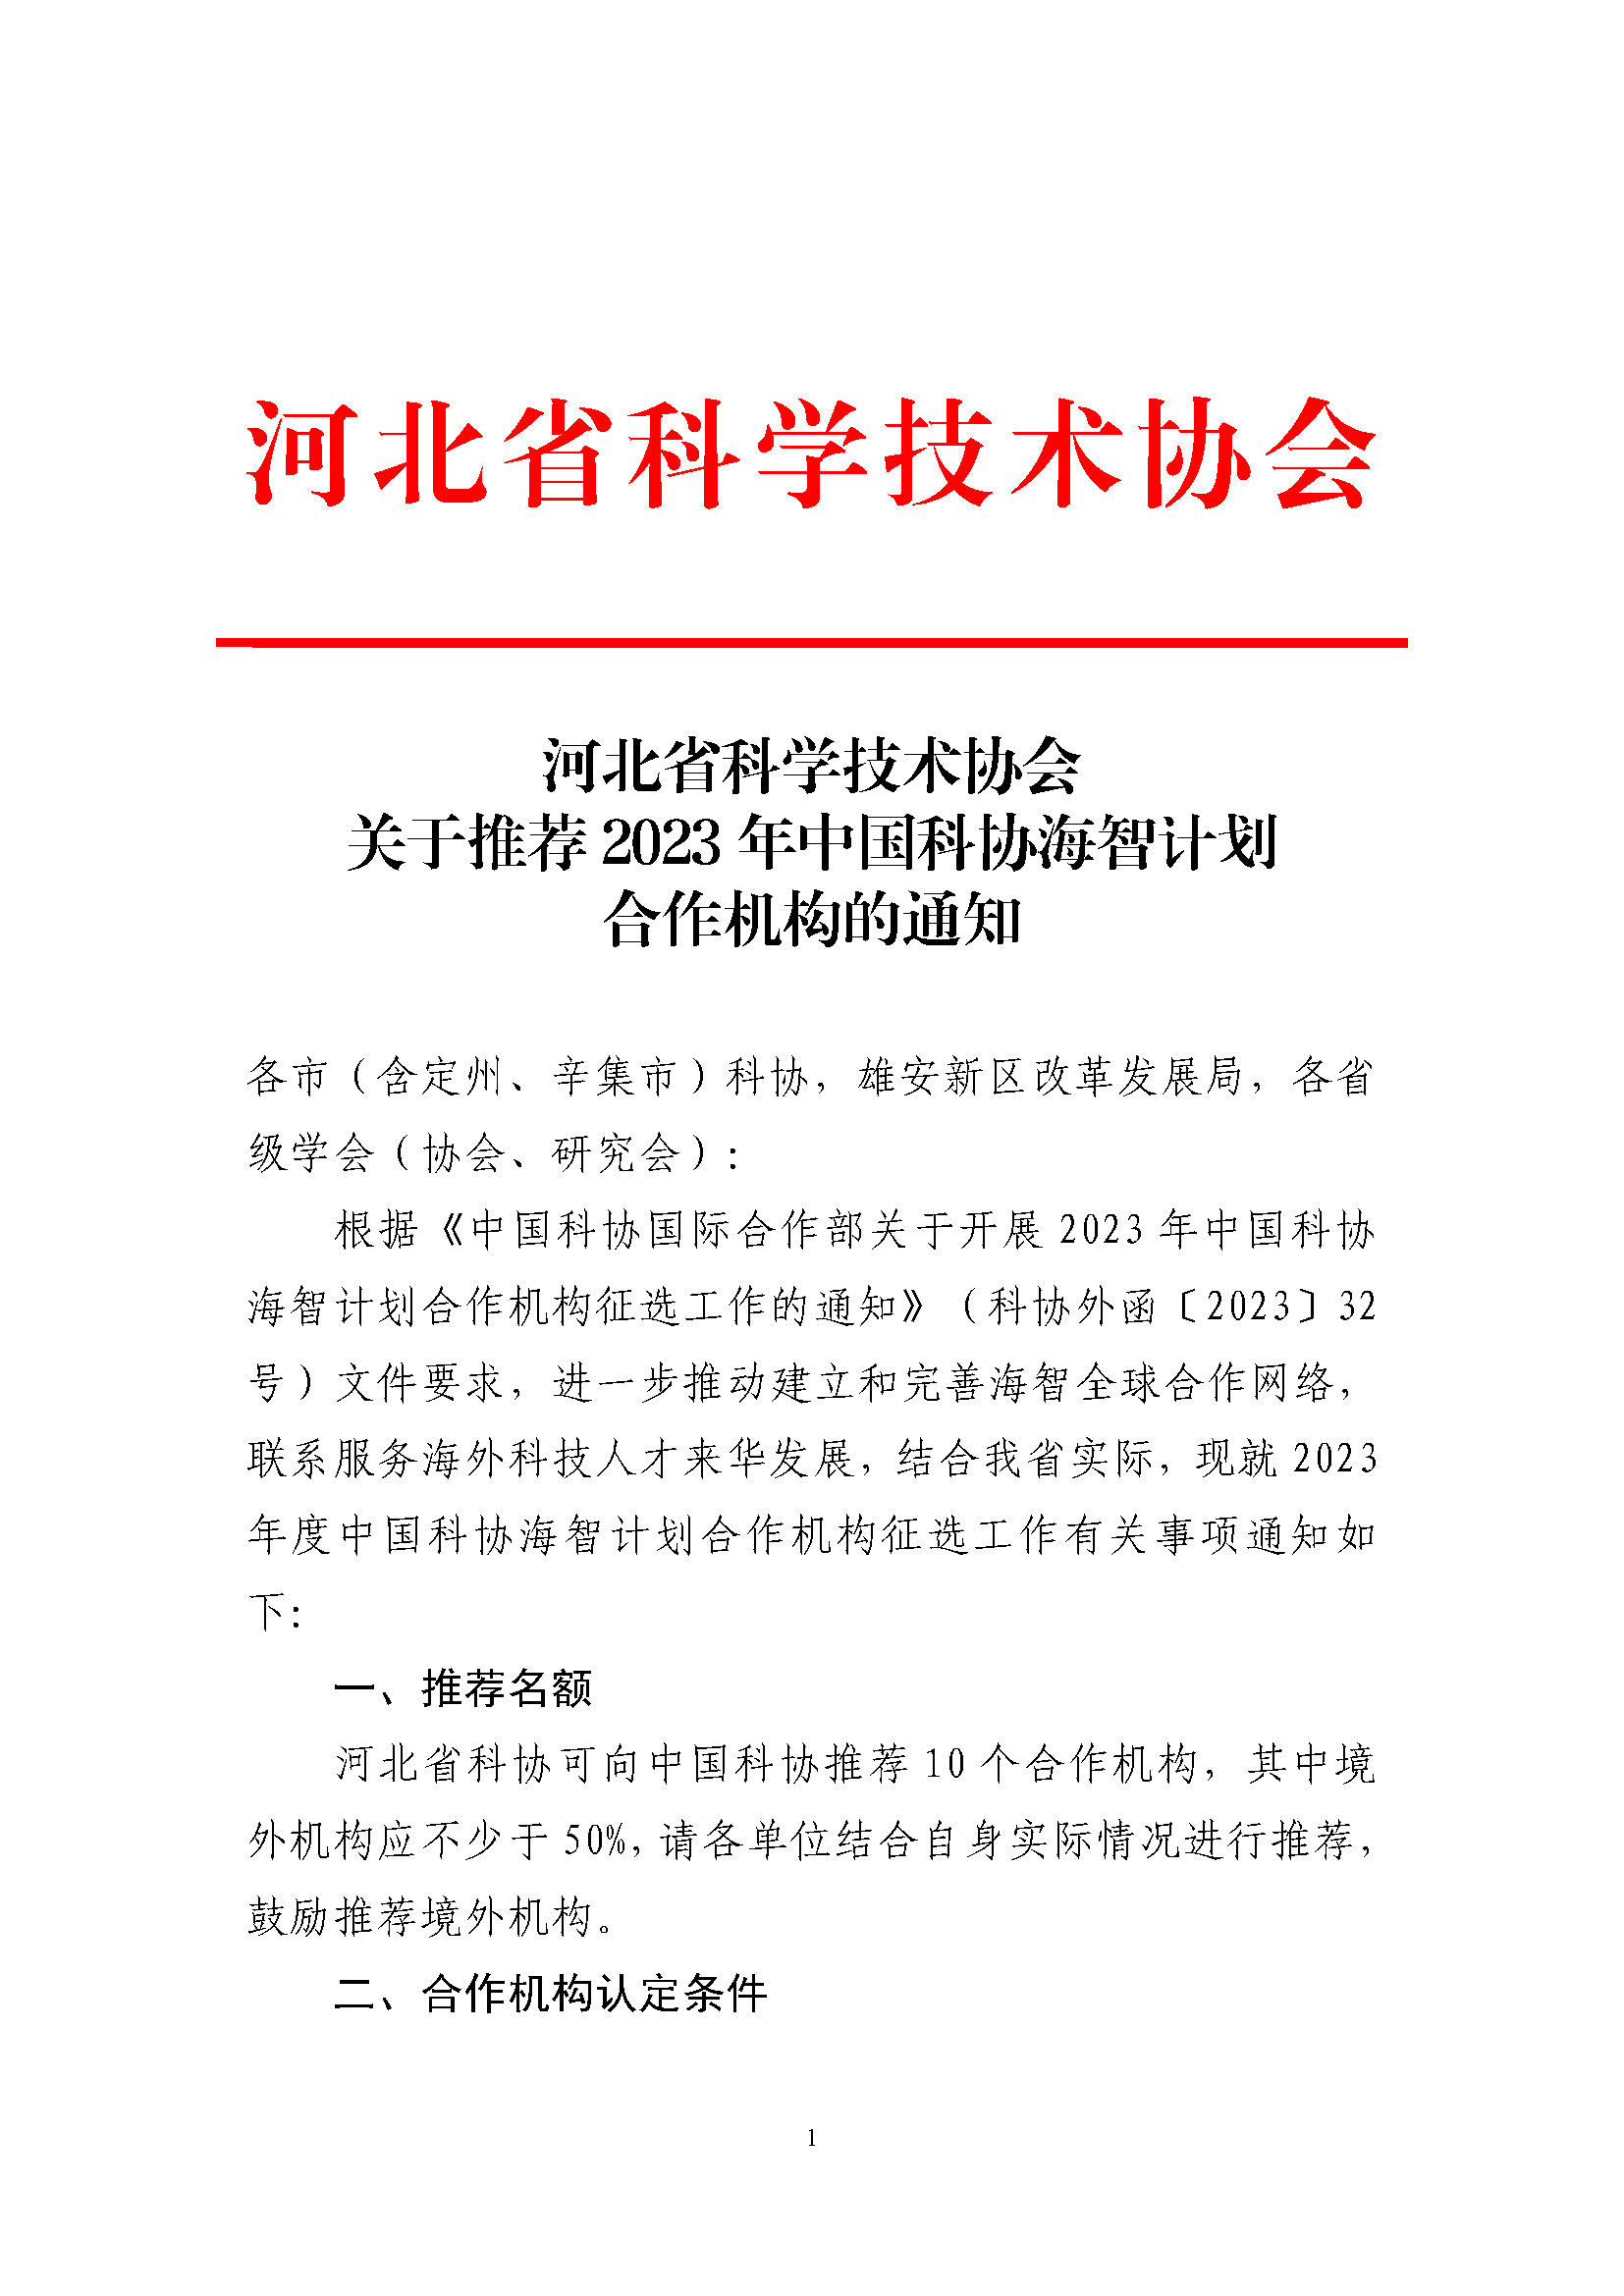 河北省科学技术协会关于推荐2023年中国科协海智计划合作机构的通知_页面_1.jpg